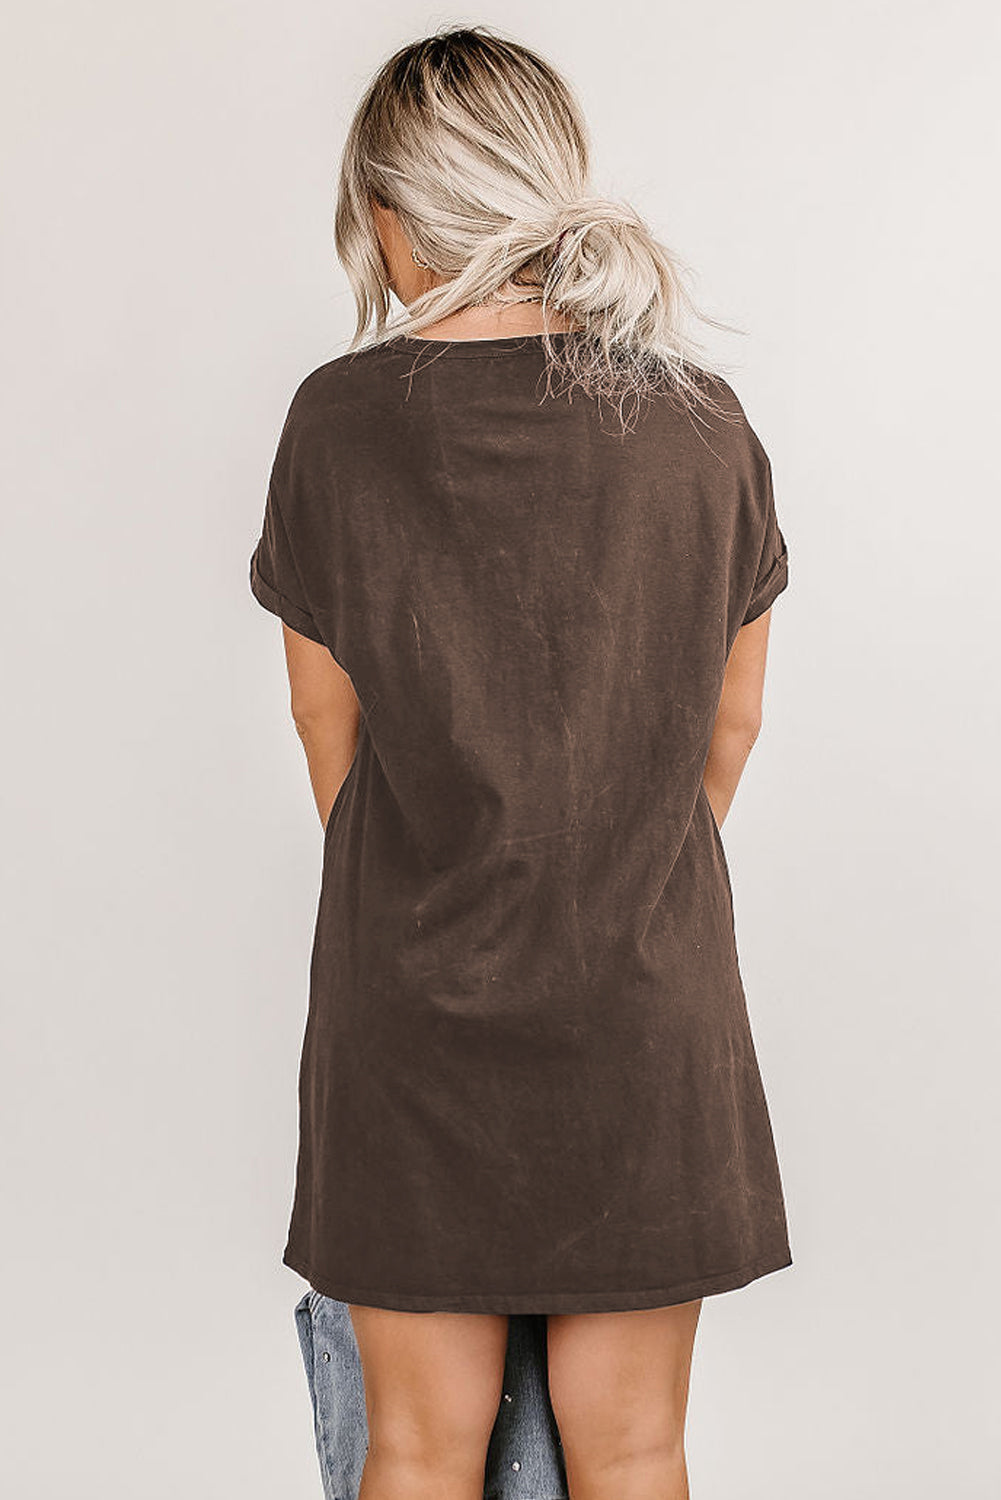 Brown Black Nashville Music Festival Trending T-Shirt Dress Dresses JT's Designer Fashion